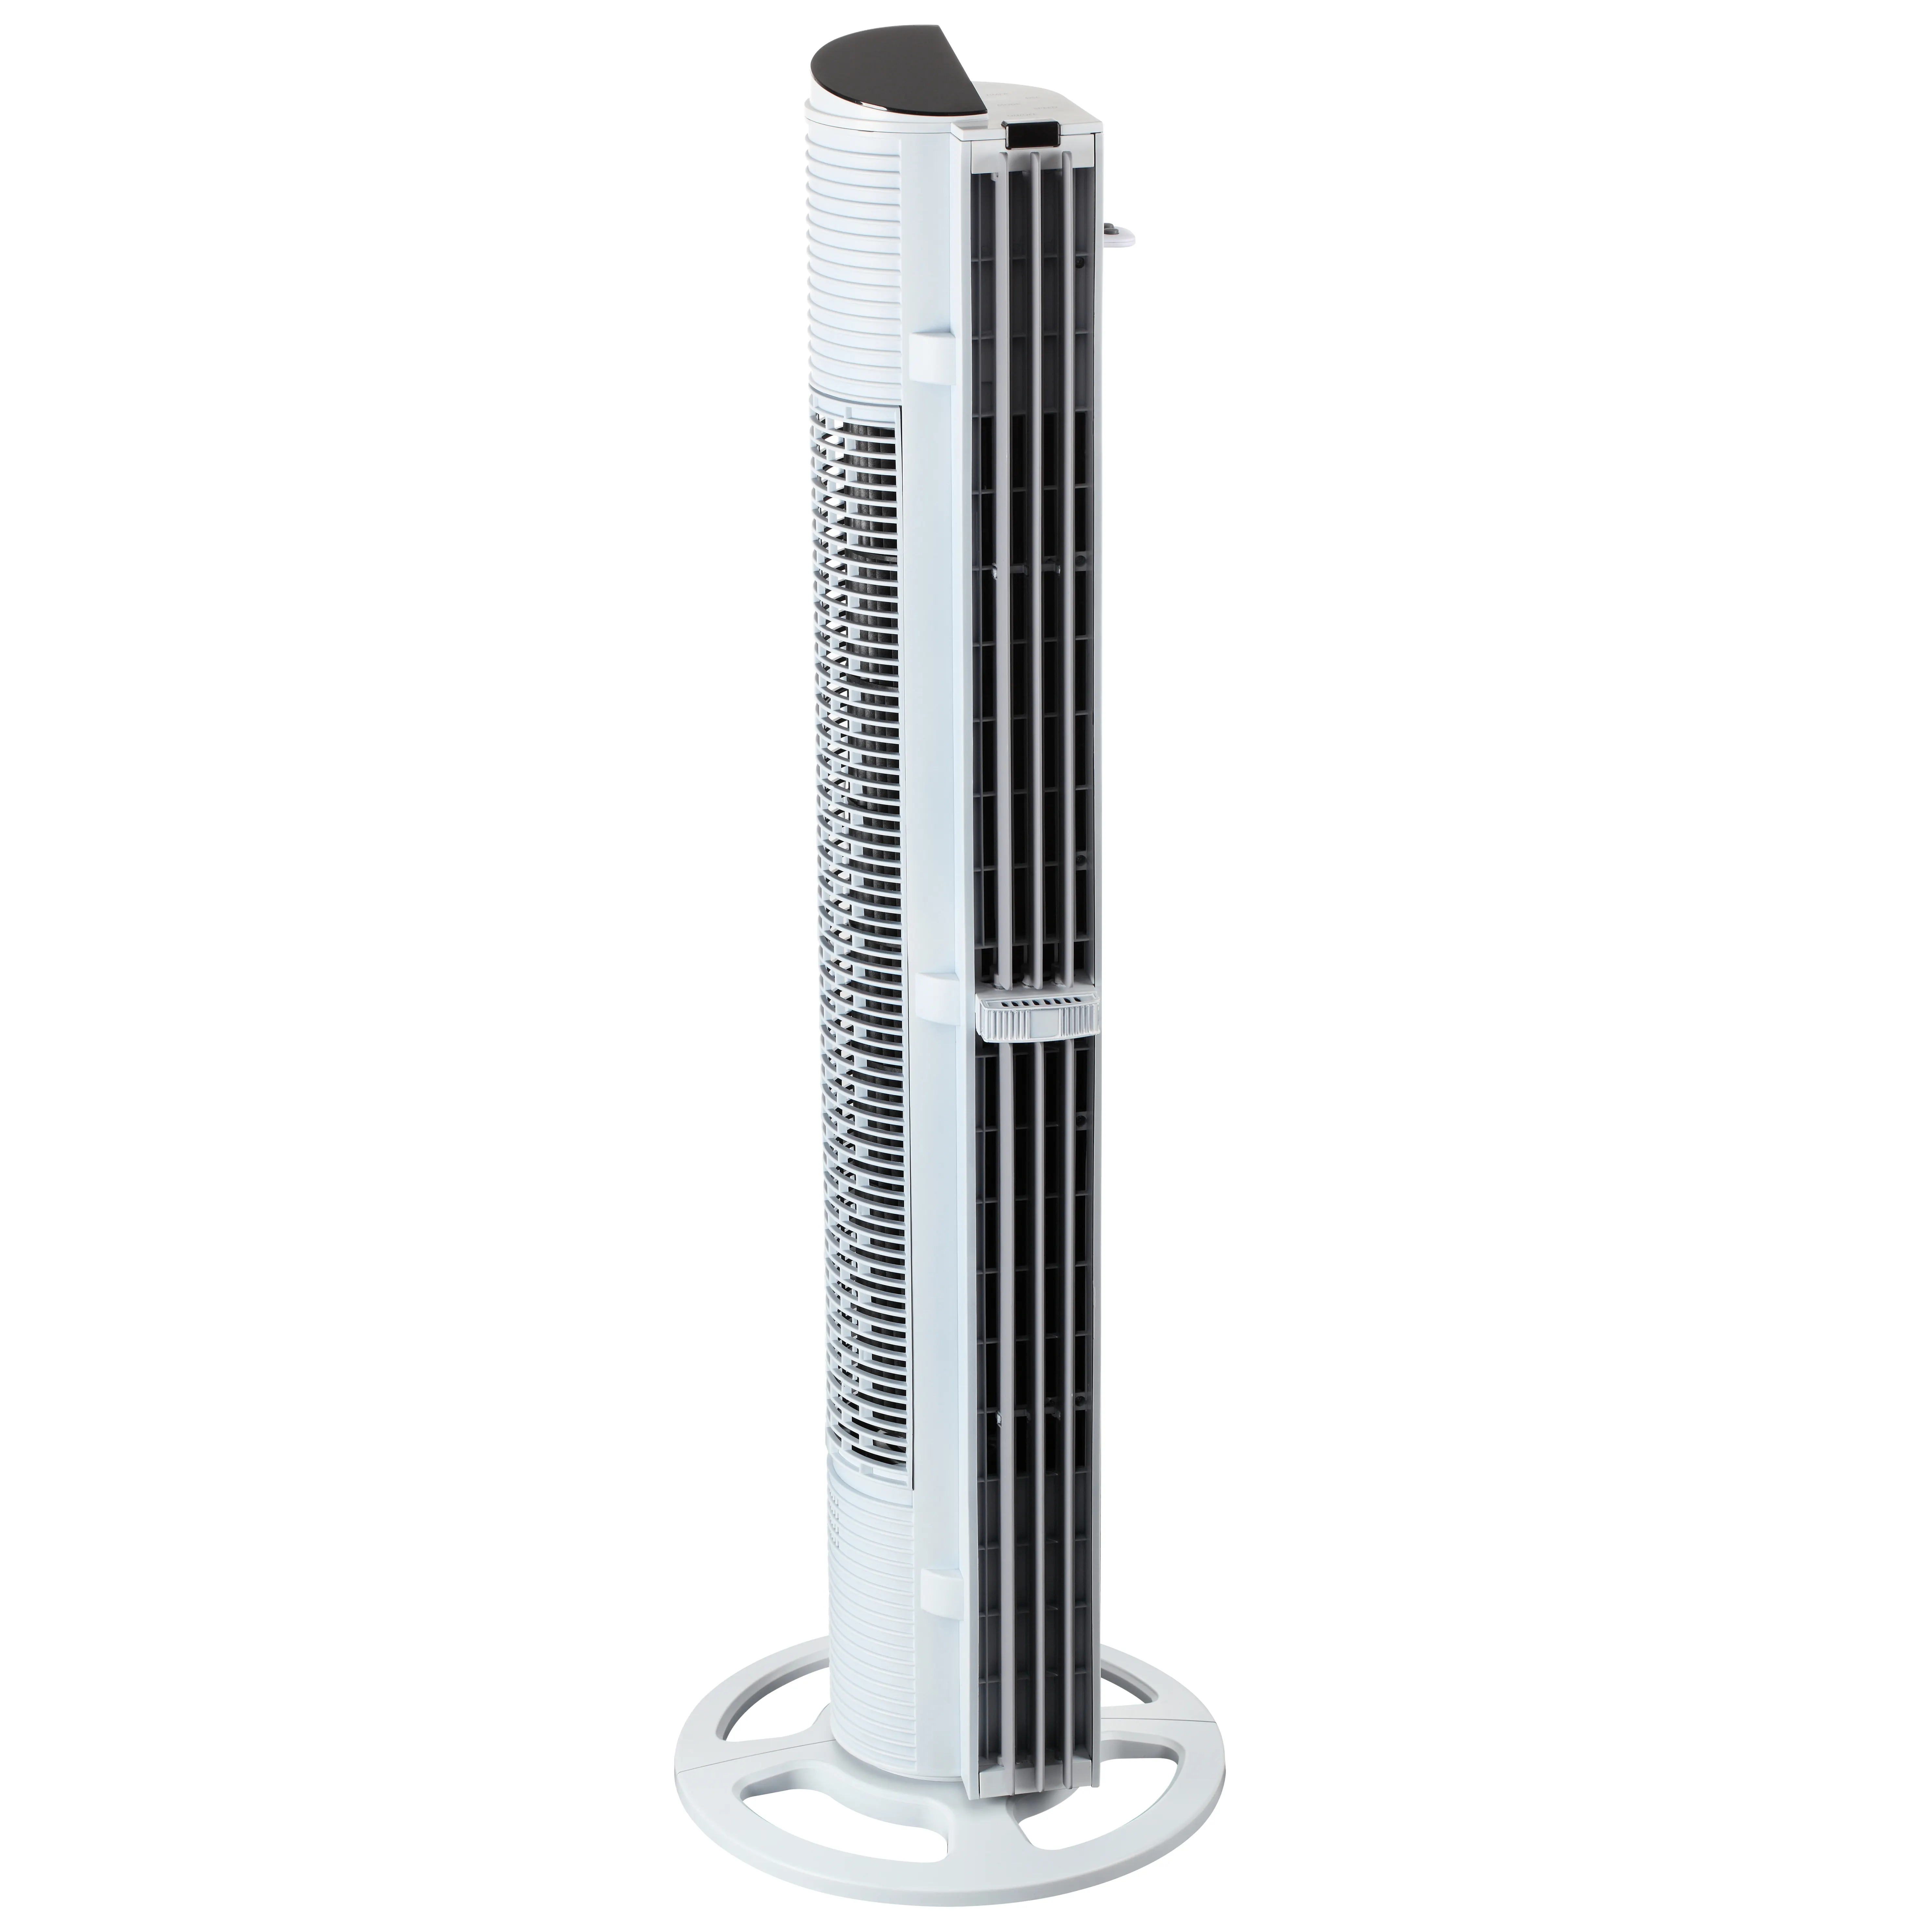 Elektrische Luft ventilatoren, die Hochleistungs-Ocilatting-Turm ventilatoren mit Remote-Farbmodellen für Porzellan hersteller kühlen